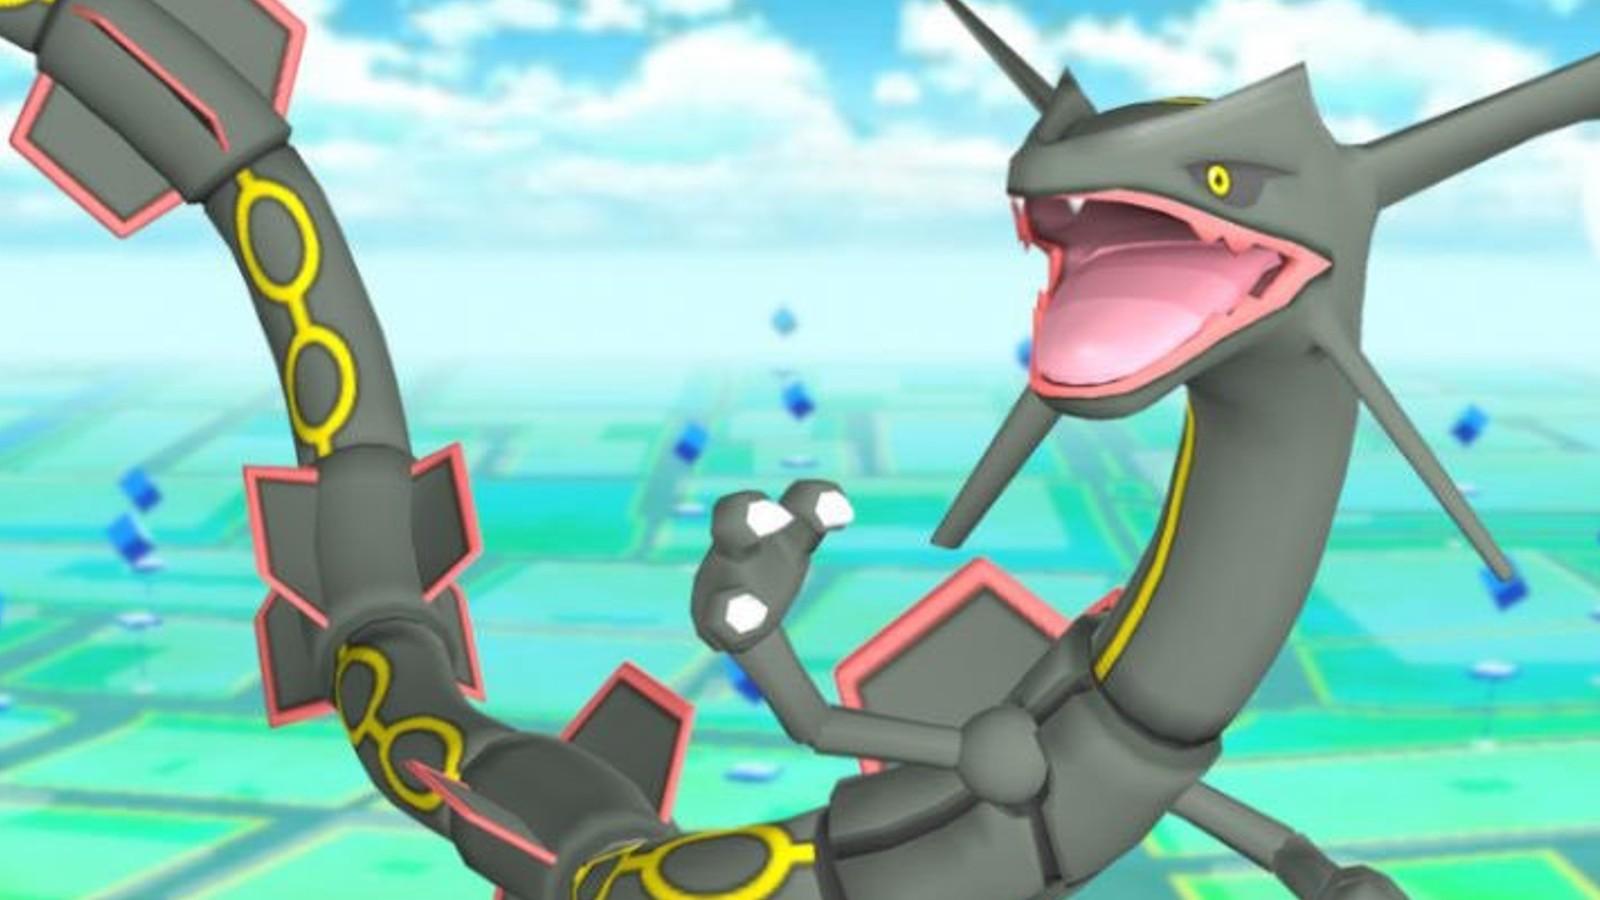 Get ready for Shiny Rayquaza & Mega Rayquaza in Pokemon GO